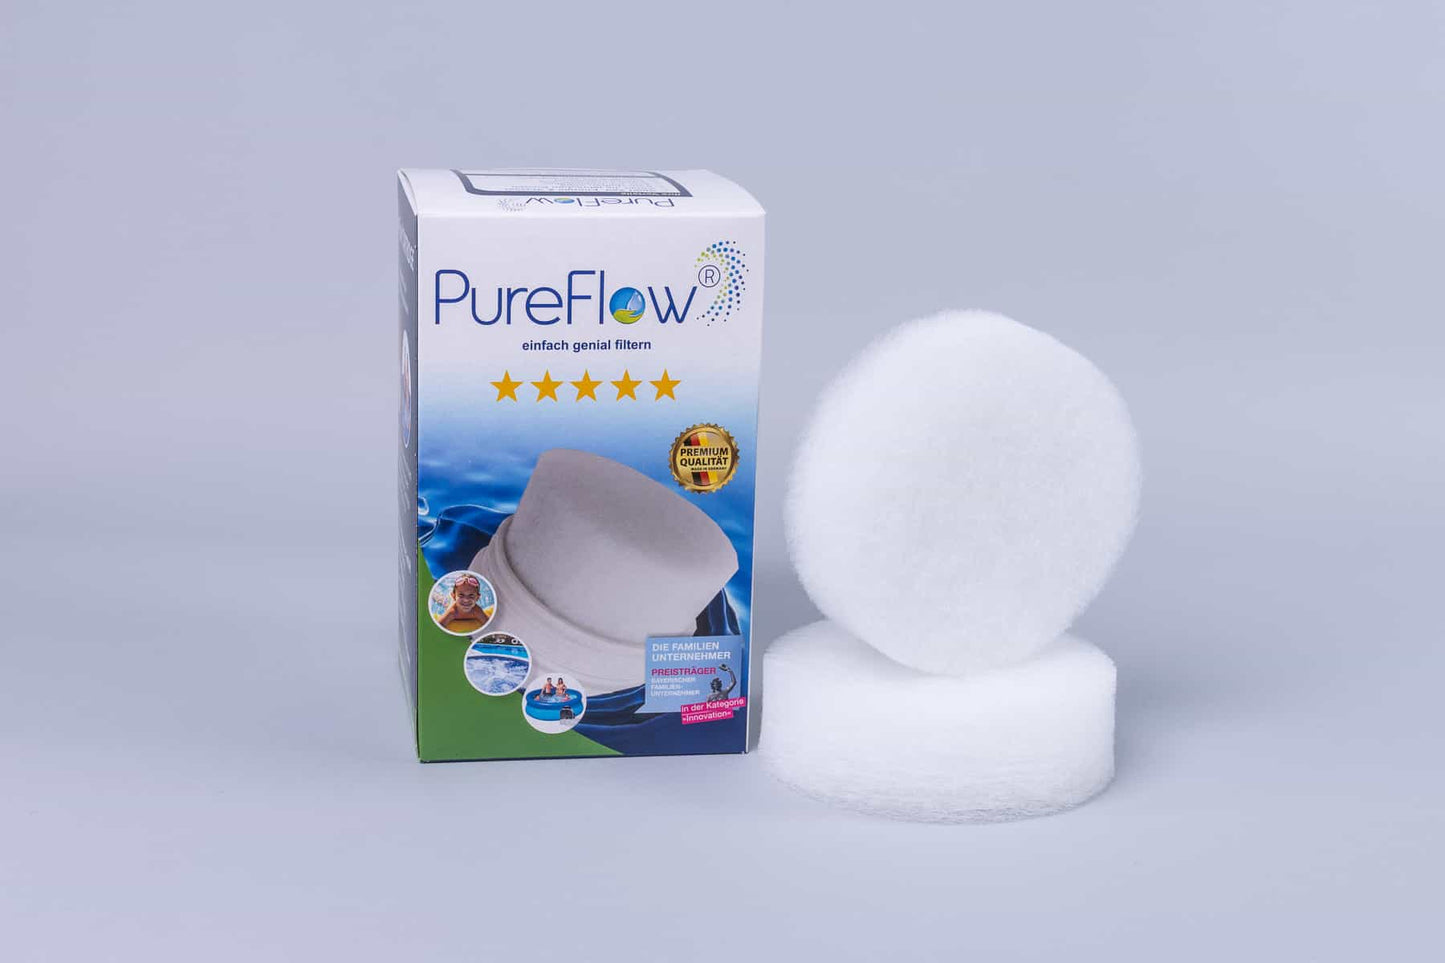 PureFlow SKIMMERFILTER. Perfekte Vorfiltration sorgt für reduziertes Biofouling, 99 % Insektenschutz, schont den Hauptfilter. Chlorfreie Desinfektion.  Unkomplizierter Filtertausch.